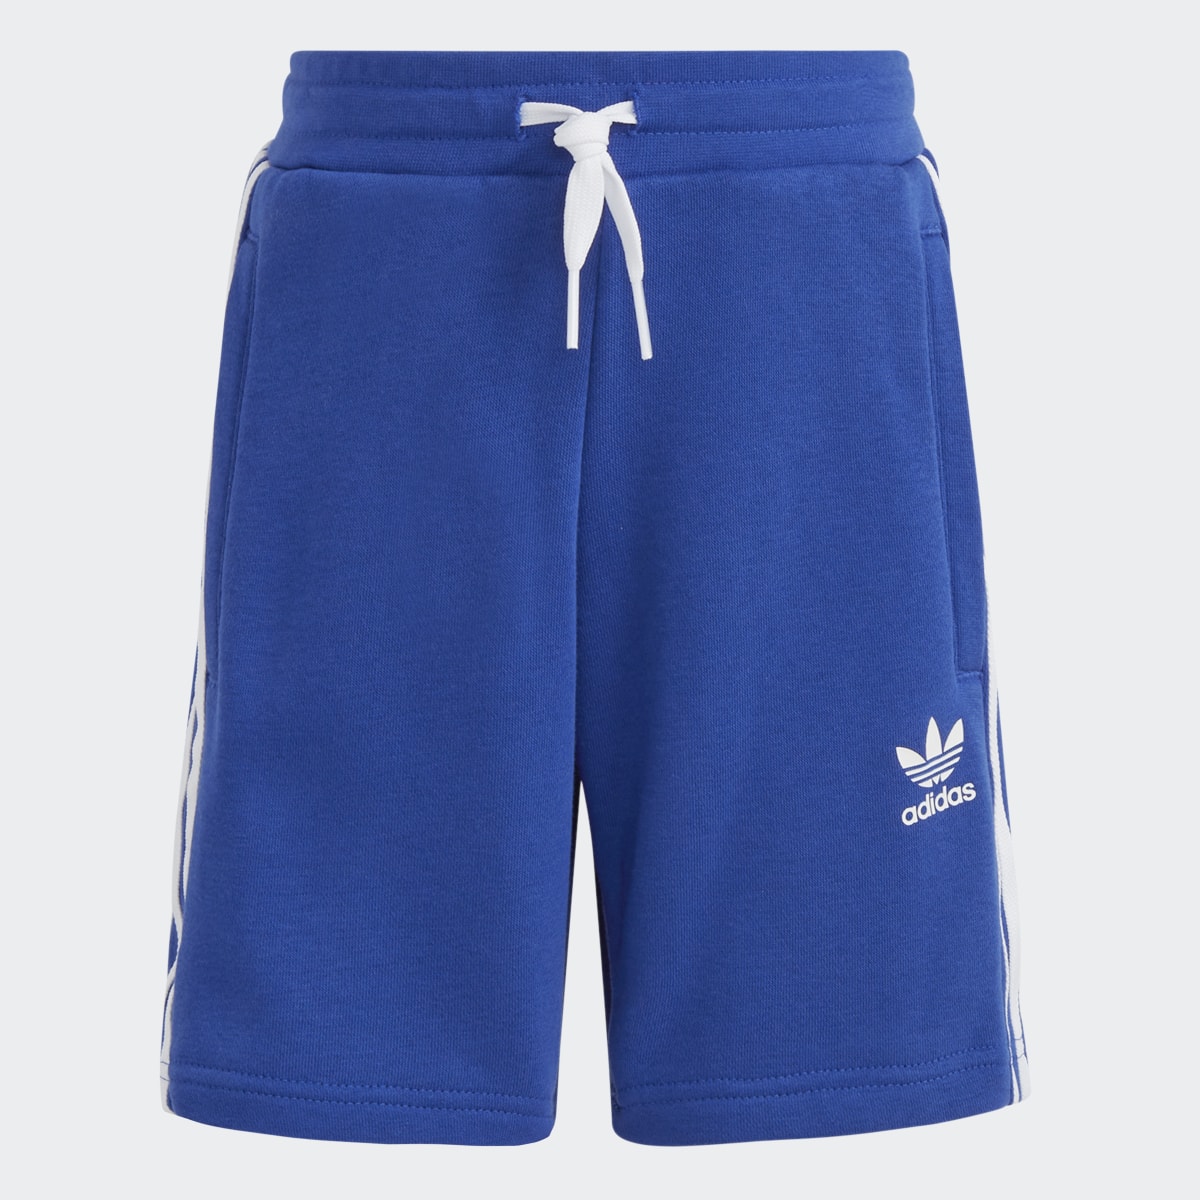 Adidas Adicolor Shorts and Tee Set. 7